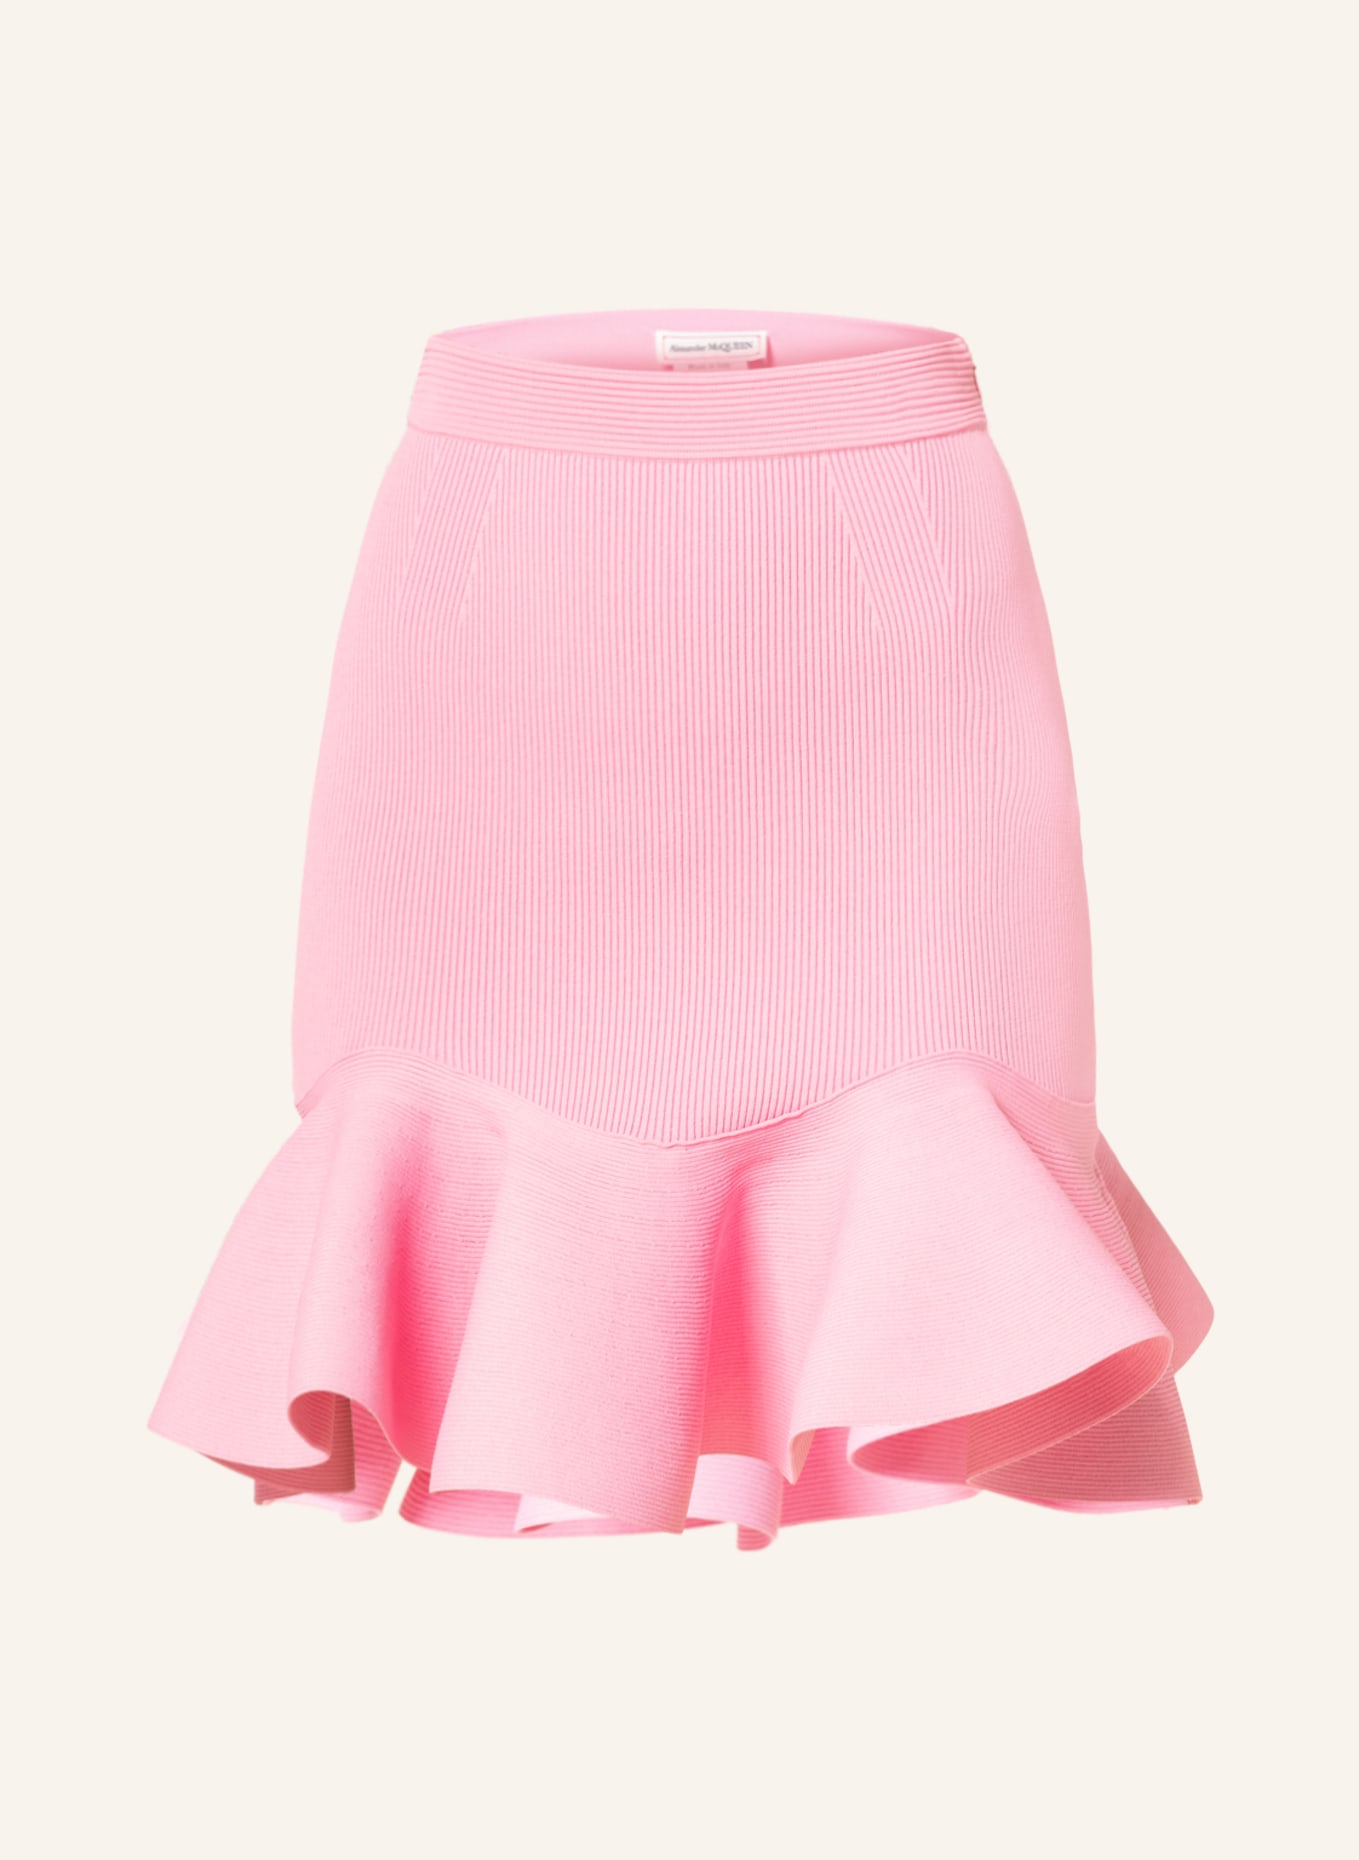 Alexander McQUEEN Skirt, Color: PINK (Image 1)